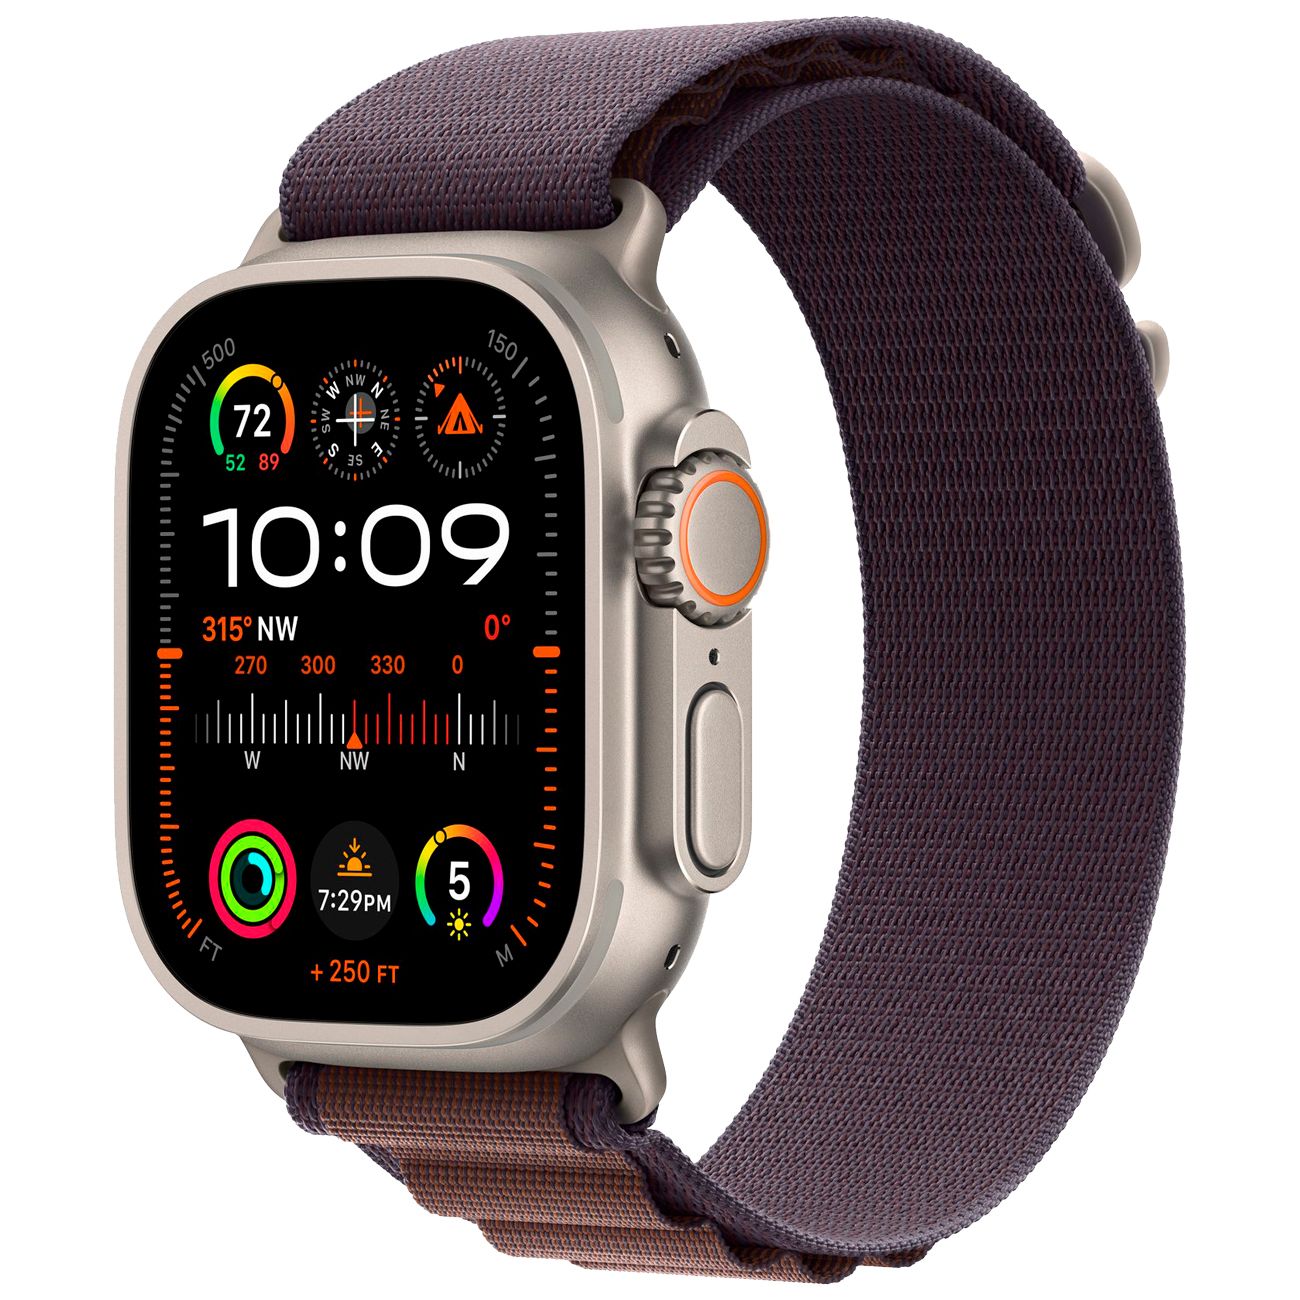 Купить смарт-часы apple watch ultra 2 alpine loop indigo Apple Watch Ultra 2 в официальном магазине Apple, Samsung, Xiaomi. iPixel.ru Купить, заказ, кредит, рассрочка, отзывы,  характеристики, цена,  фотографии, в подарок.